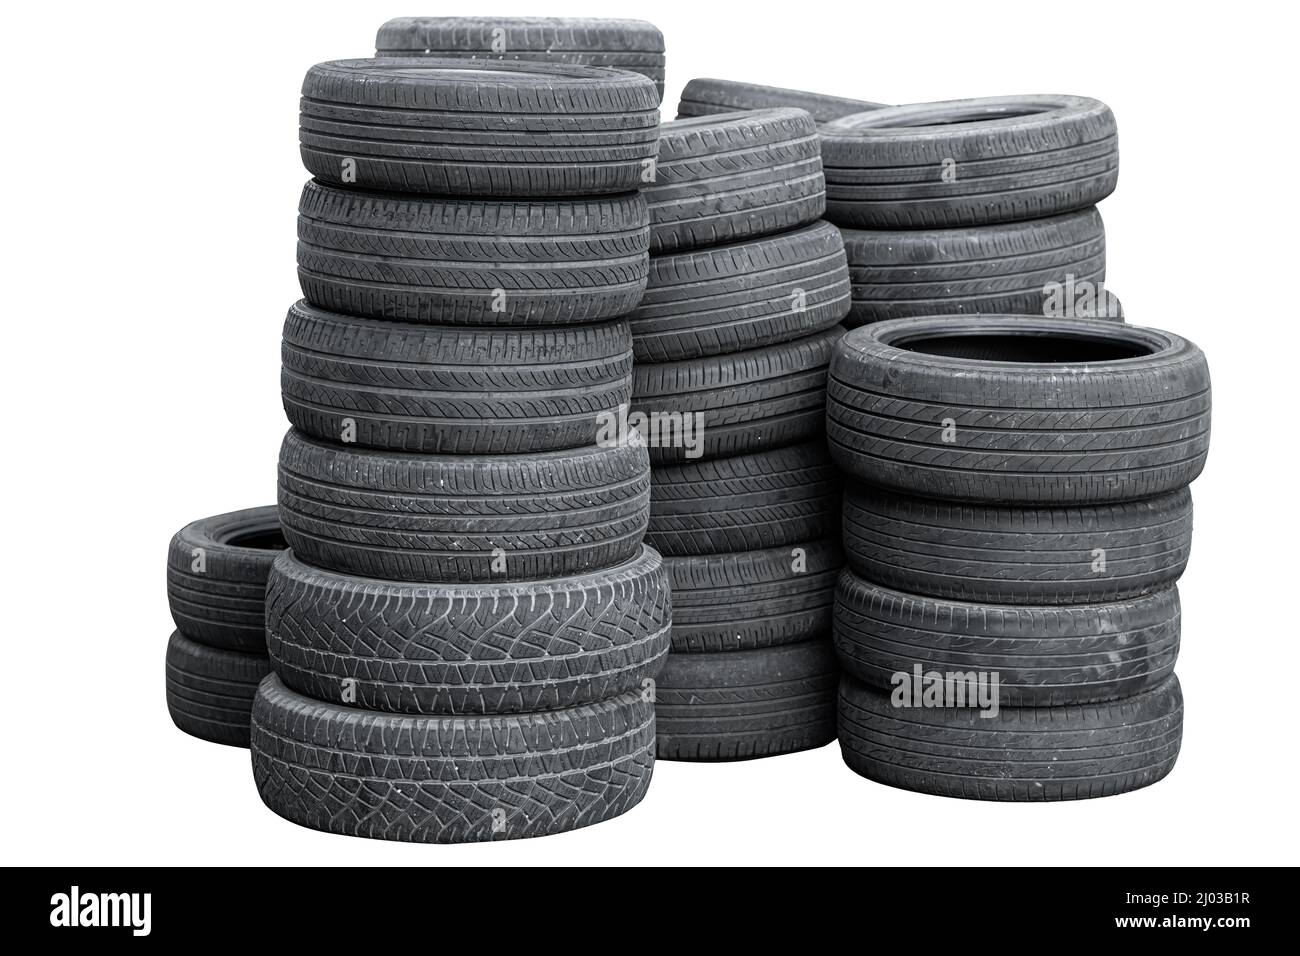 pila de neumáticos usados de coches antiguos aislada sobre fondo blanco Foto de stock